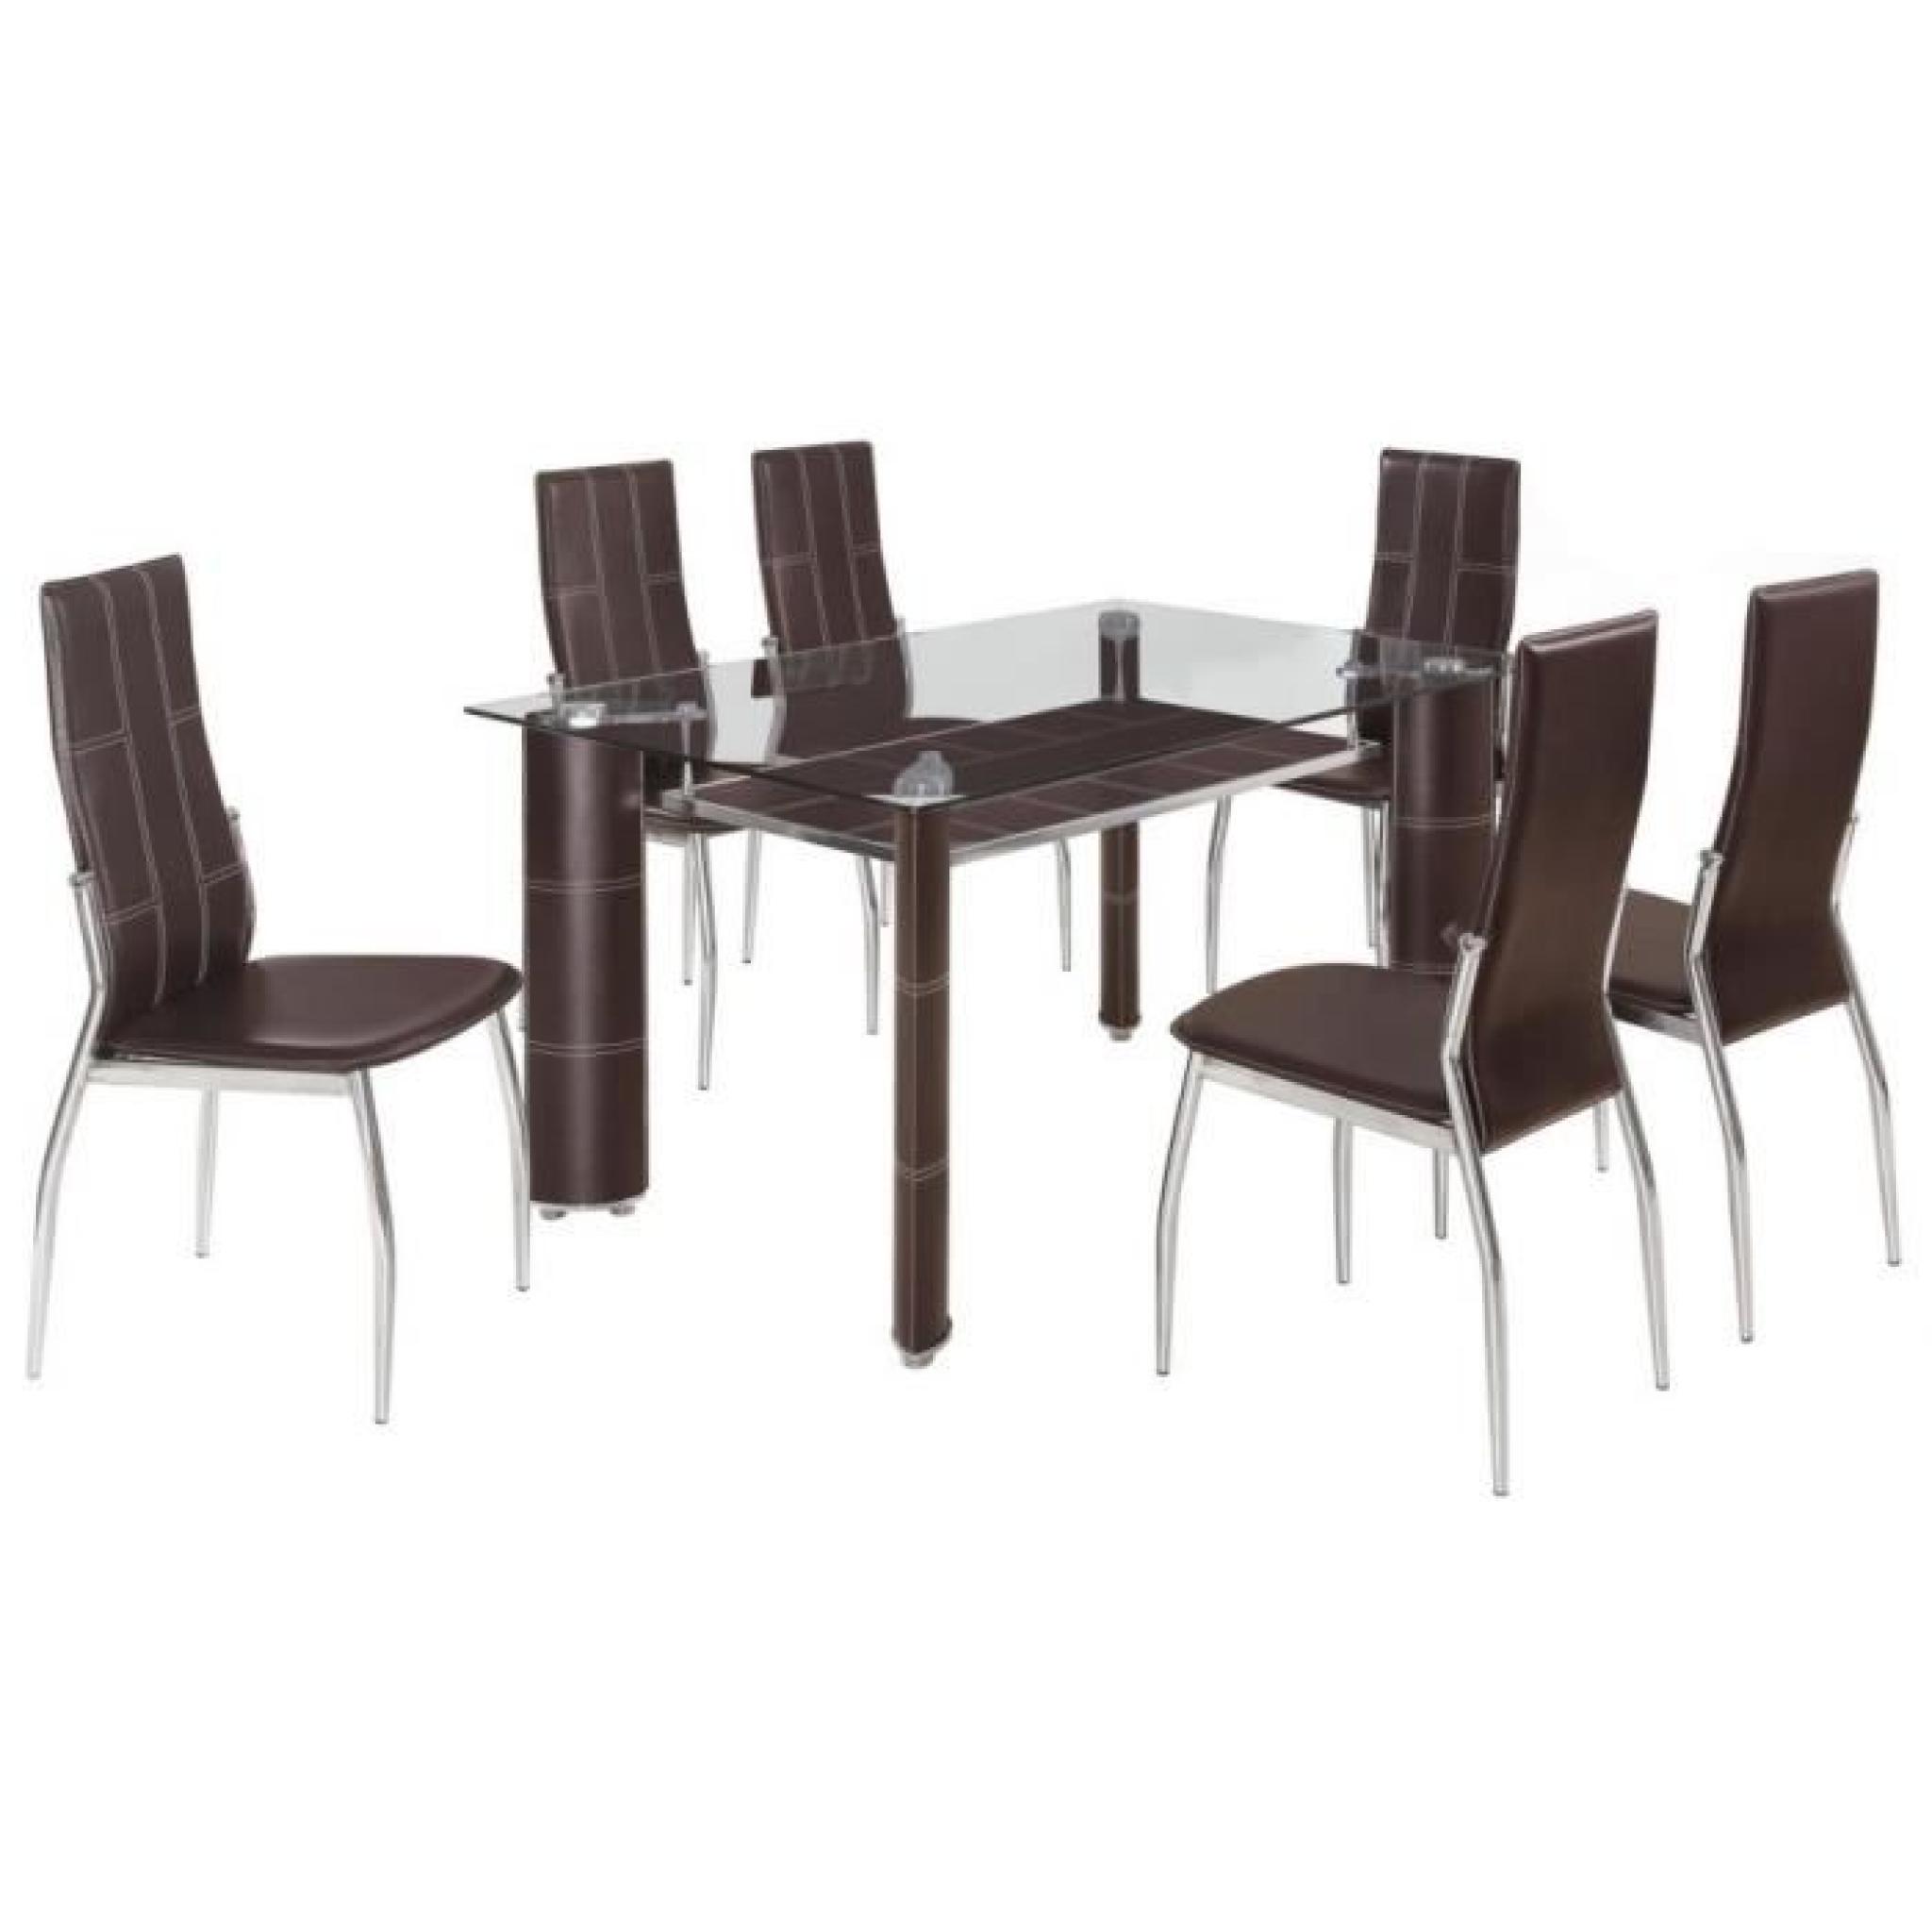 Table à manger en verre + 6 chaises PU brun